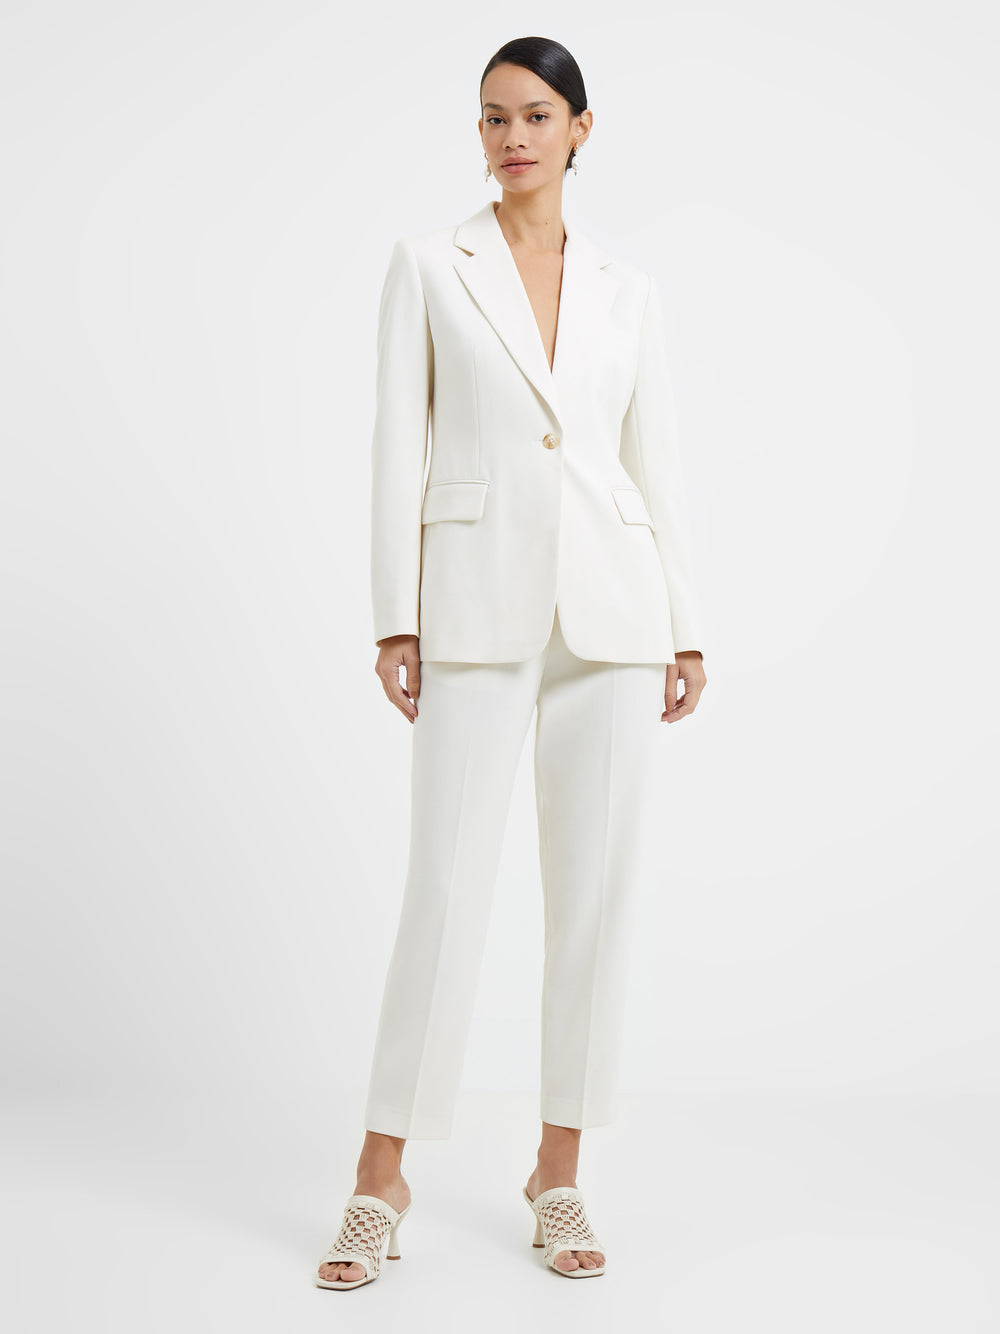 Shop Ivory white suit, metallic silver smoking trench jacket -Deji & Kola